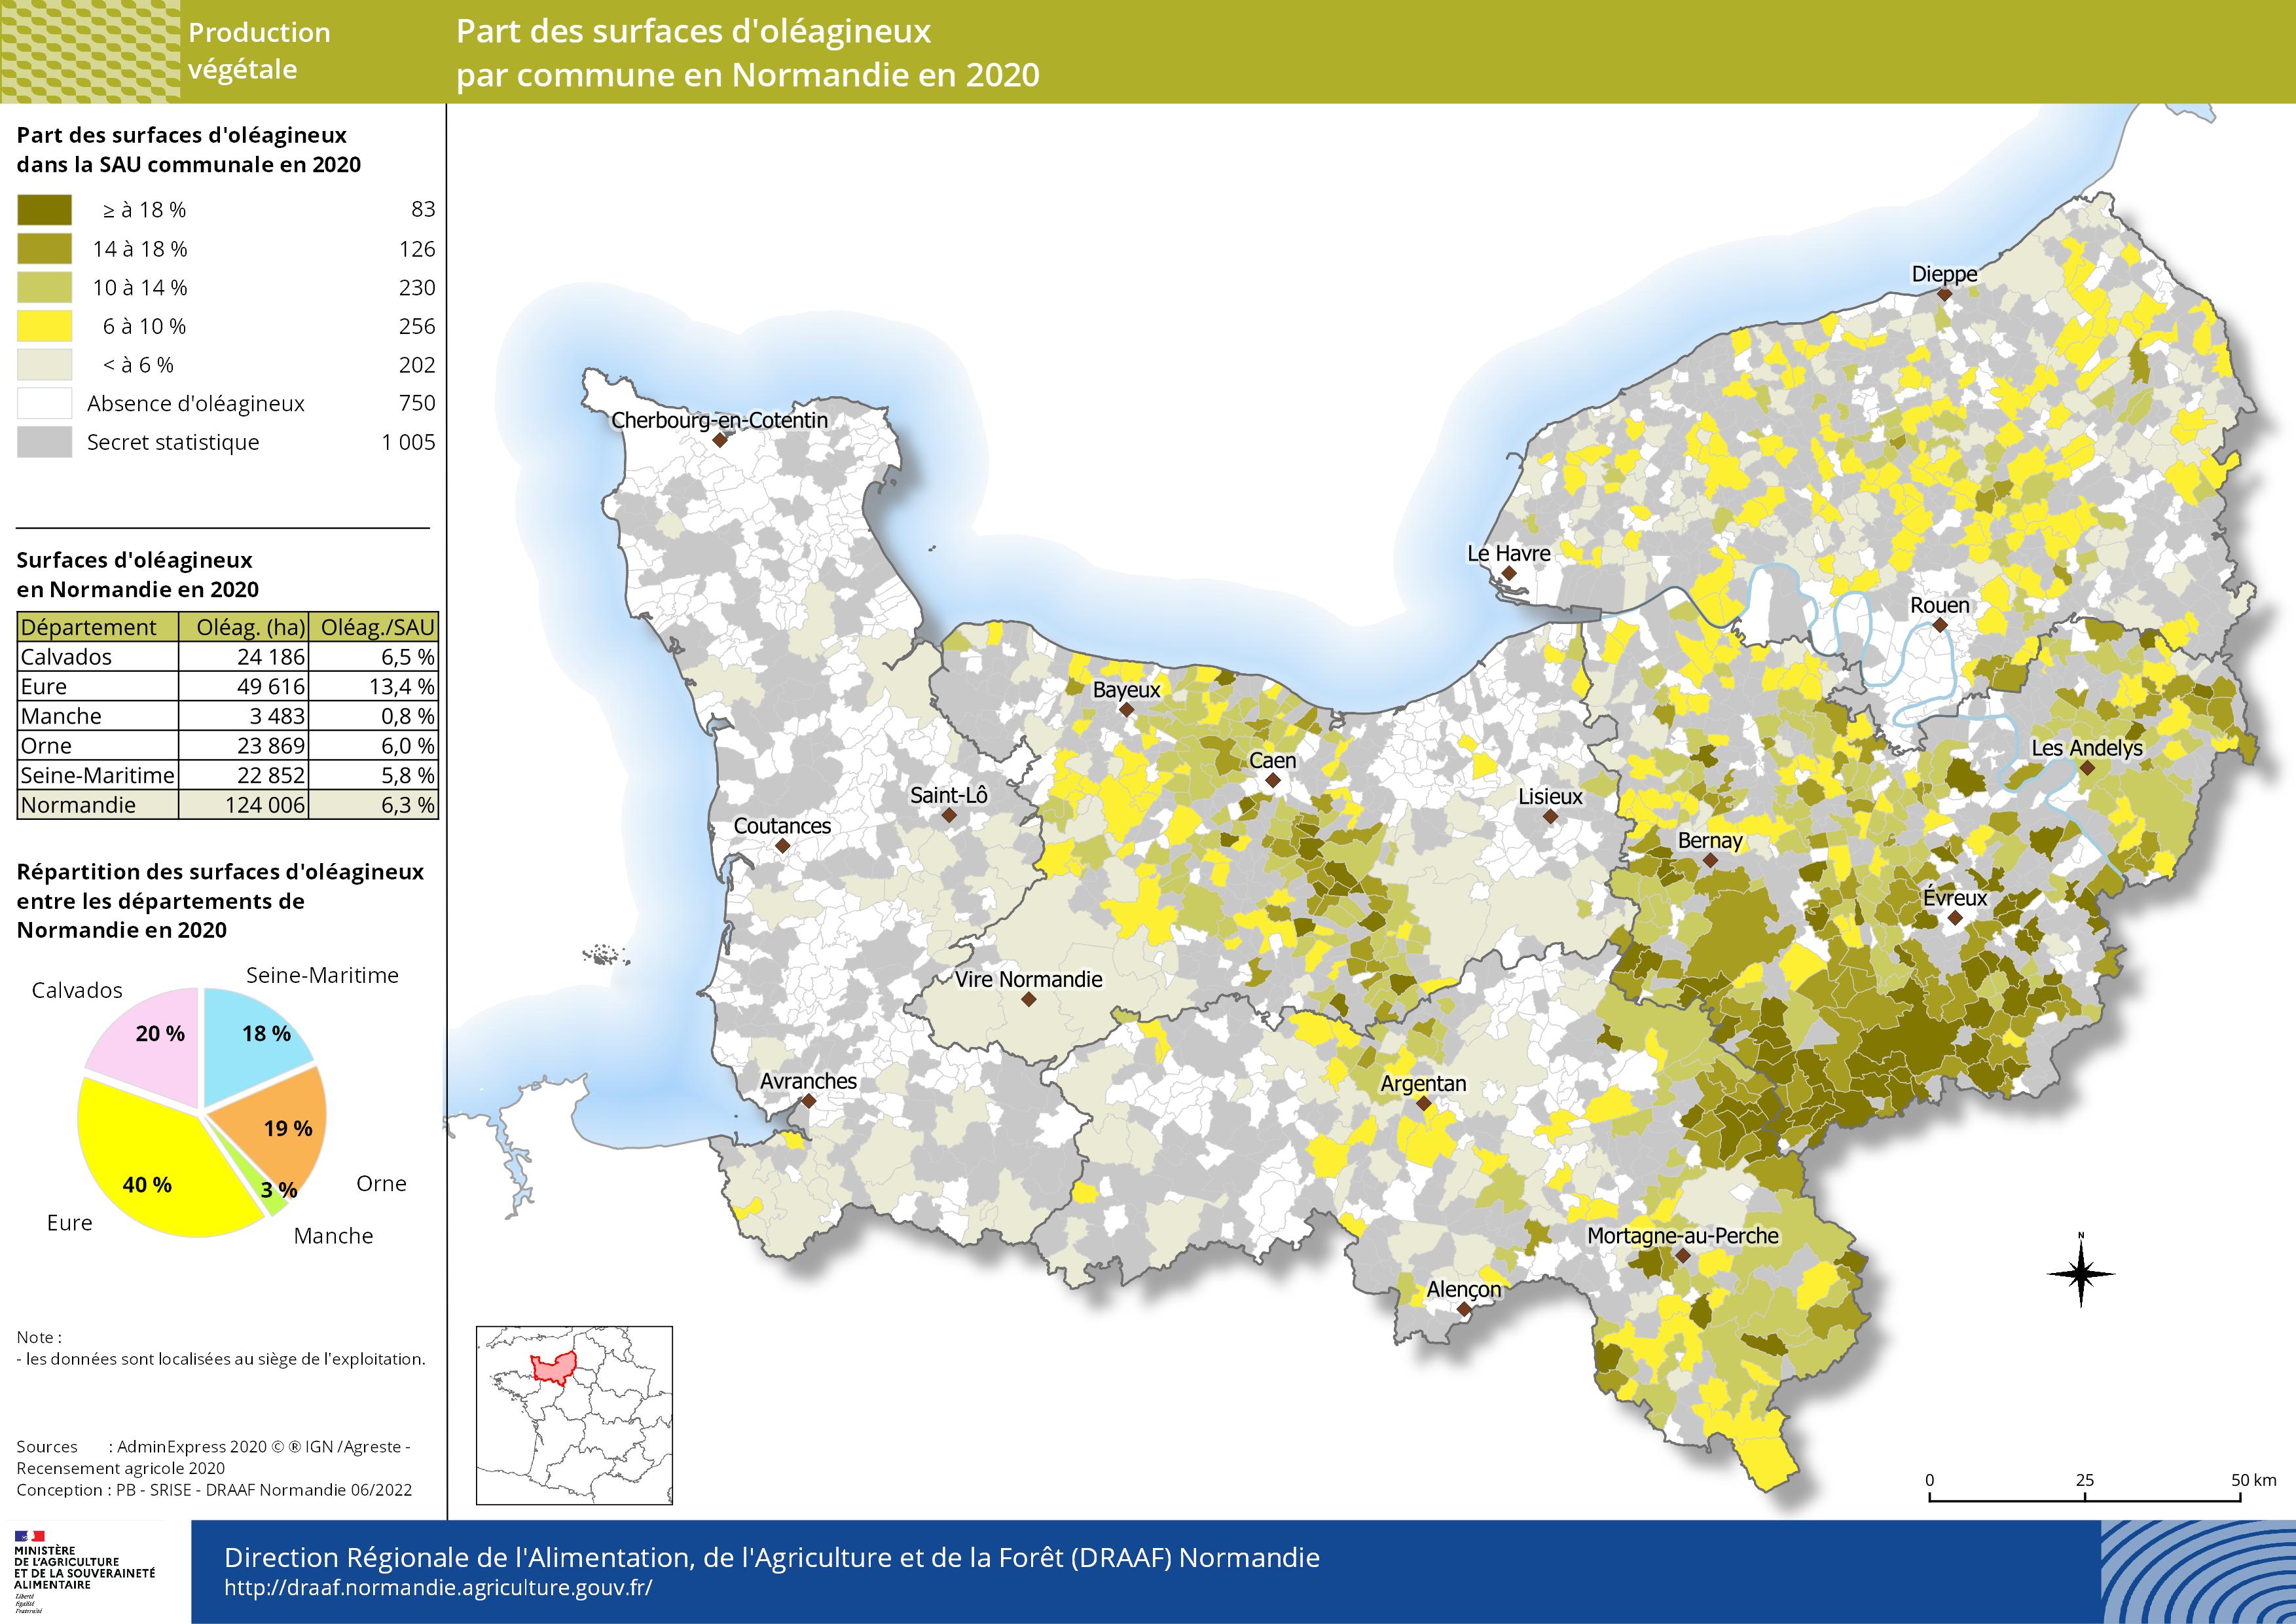 carte représentant la part des surfaces d'oléagineux par commune en Normandie en 2020